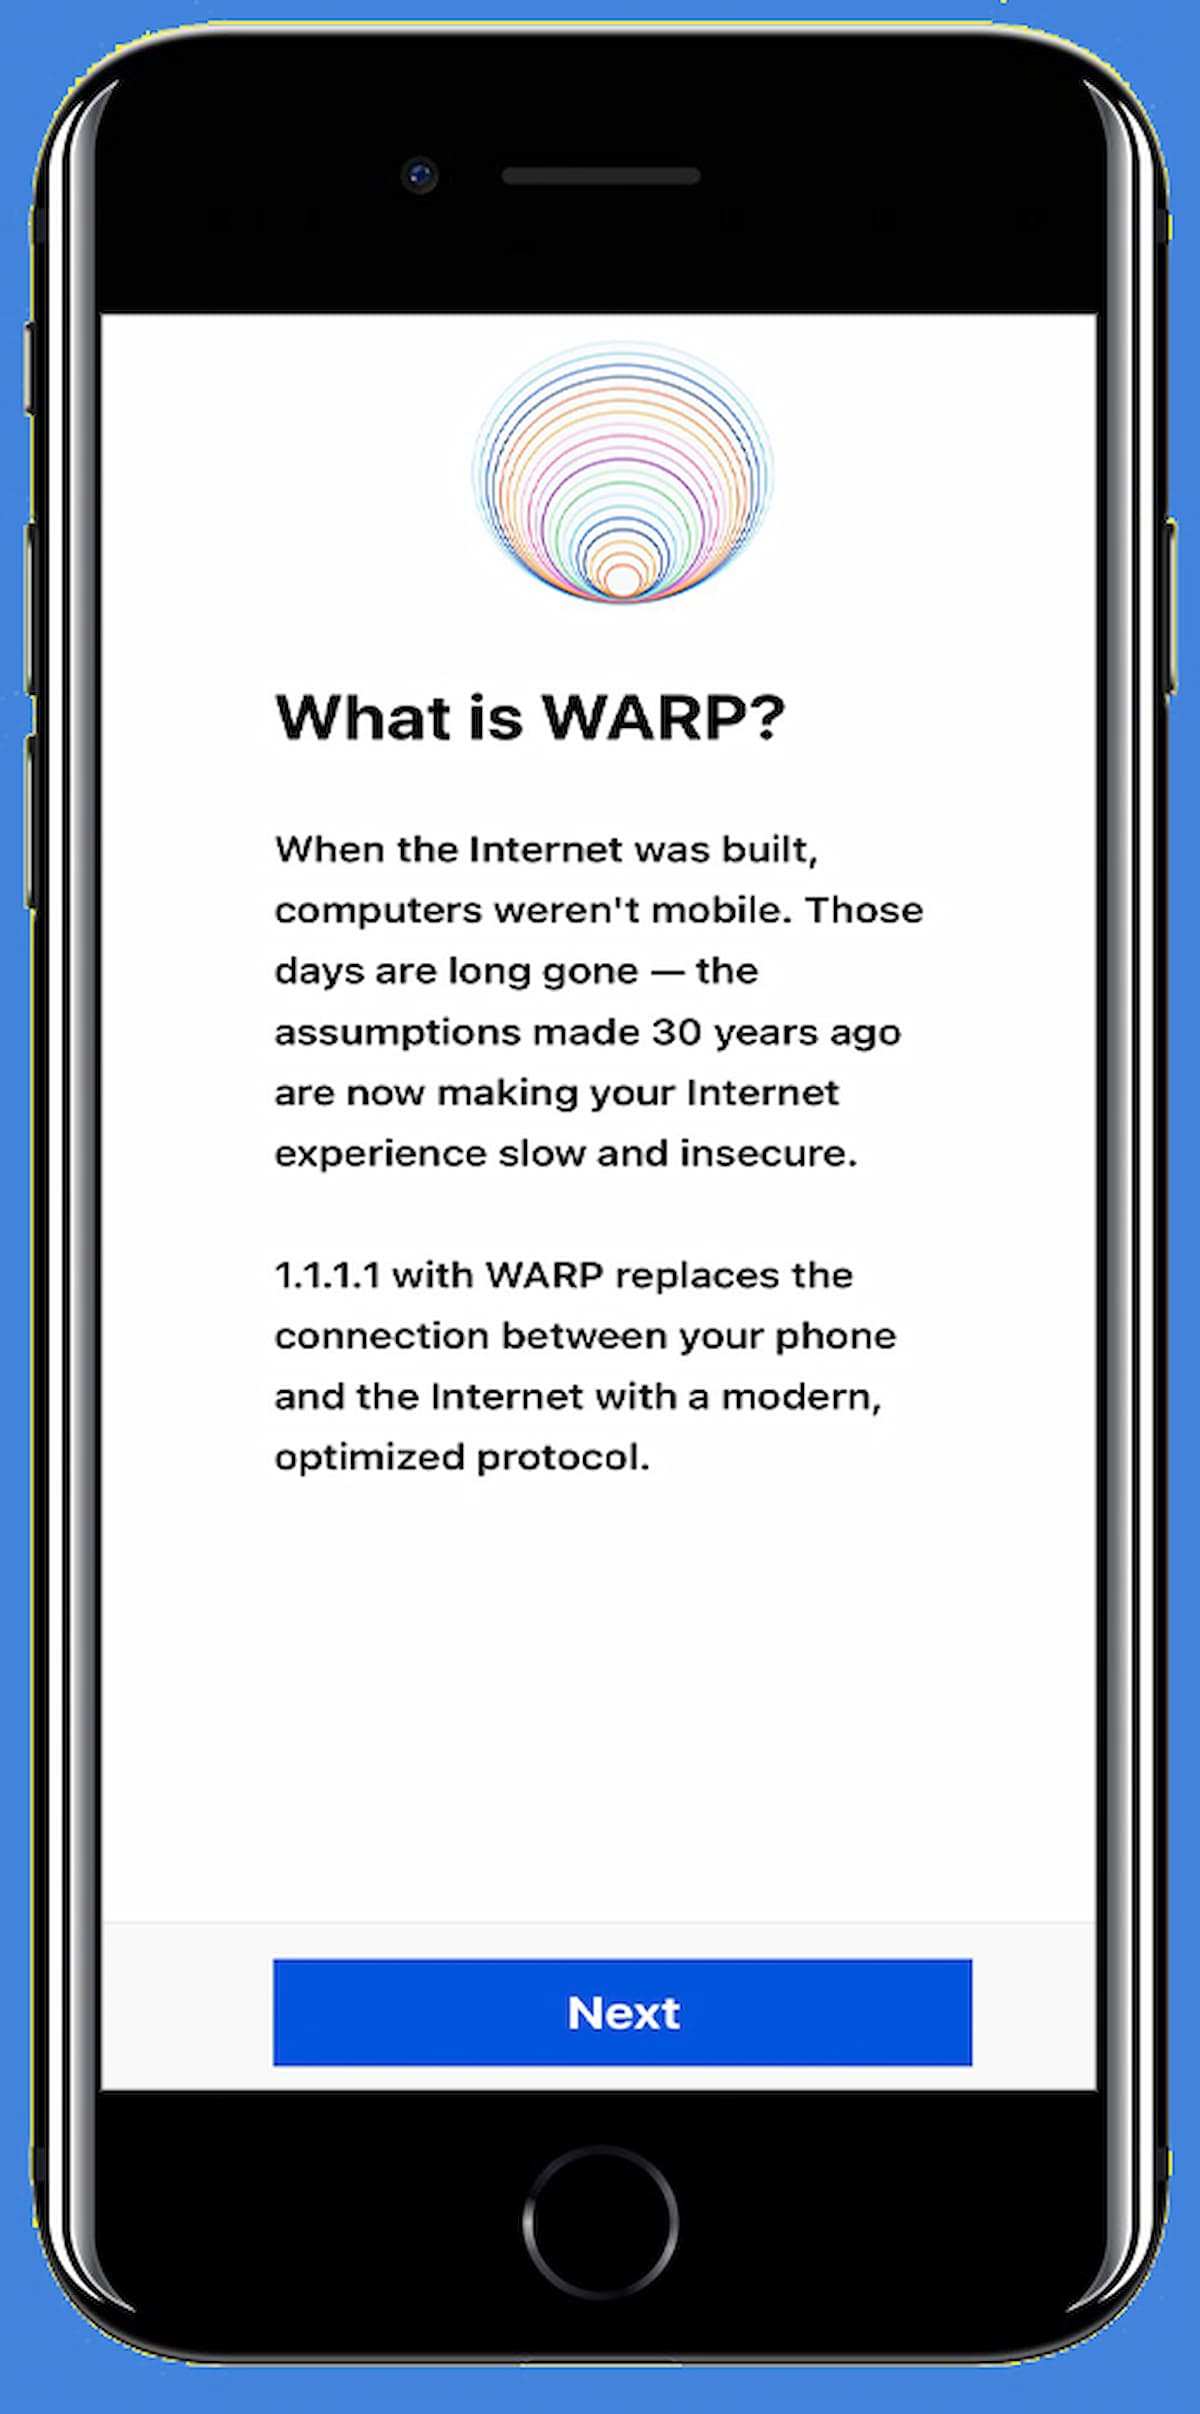 Cách vào web khi bị chặn bằng dịch vụ DNS WARP 1.1.1.1 trên điện thoại